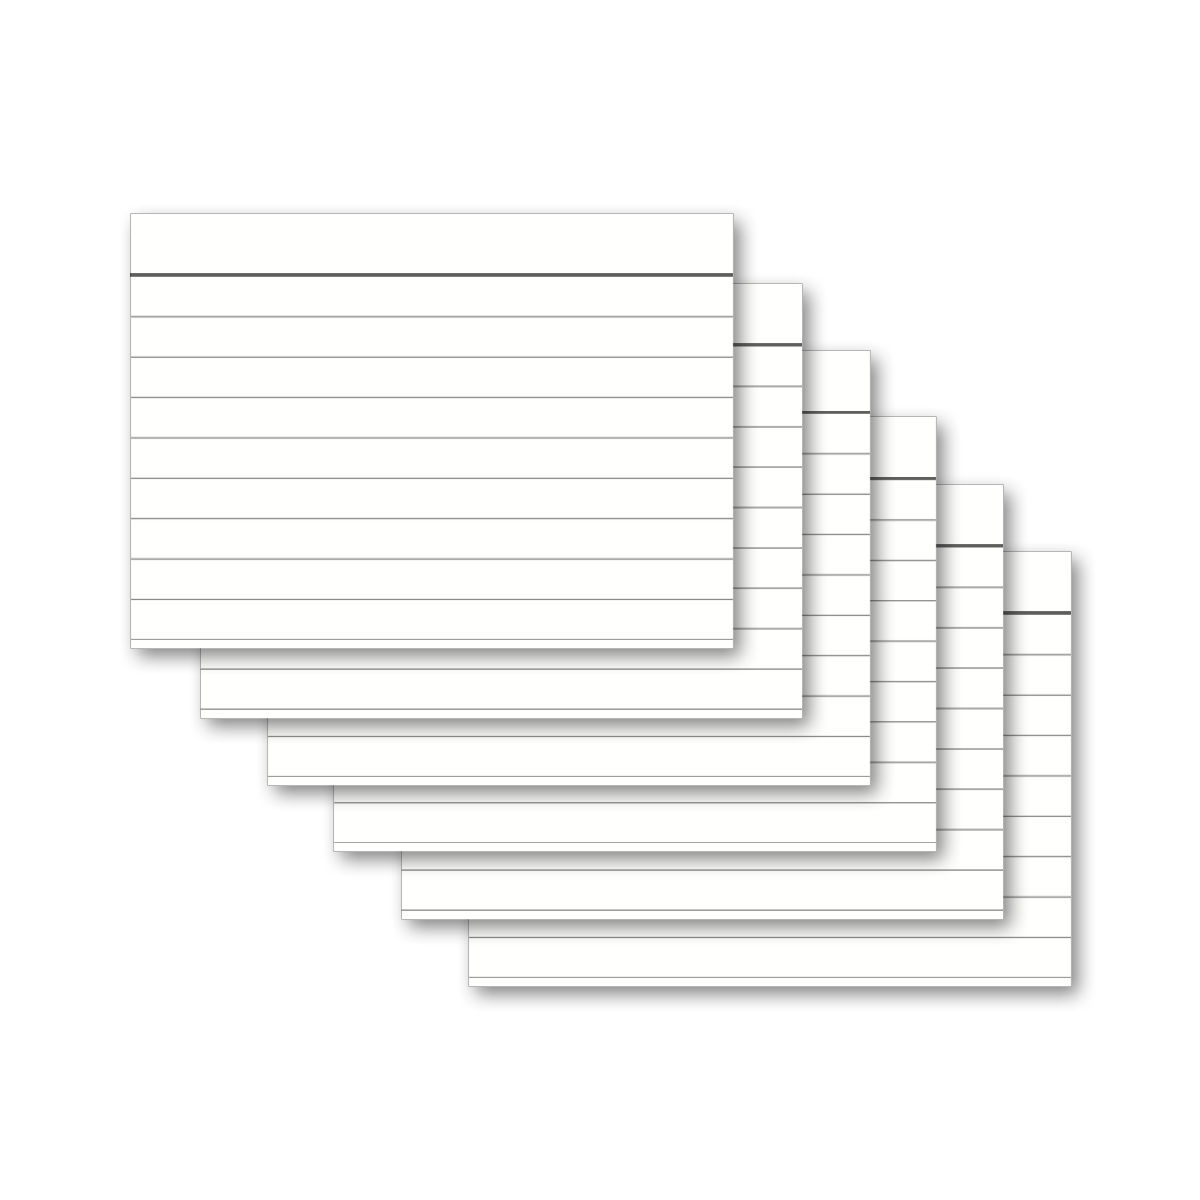 Karteikarten - A4, A5, A6, A7, A8 - weiß - blanko, liniert, kariert